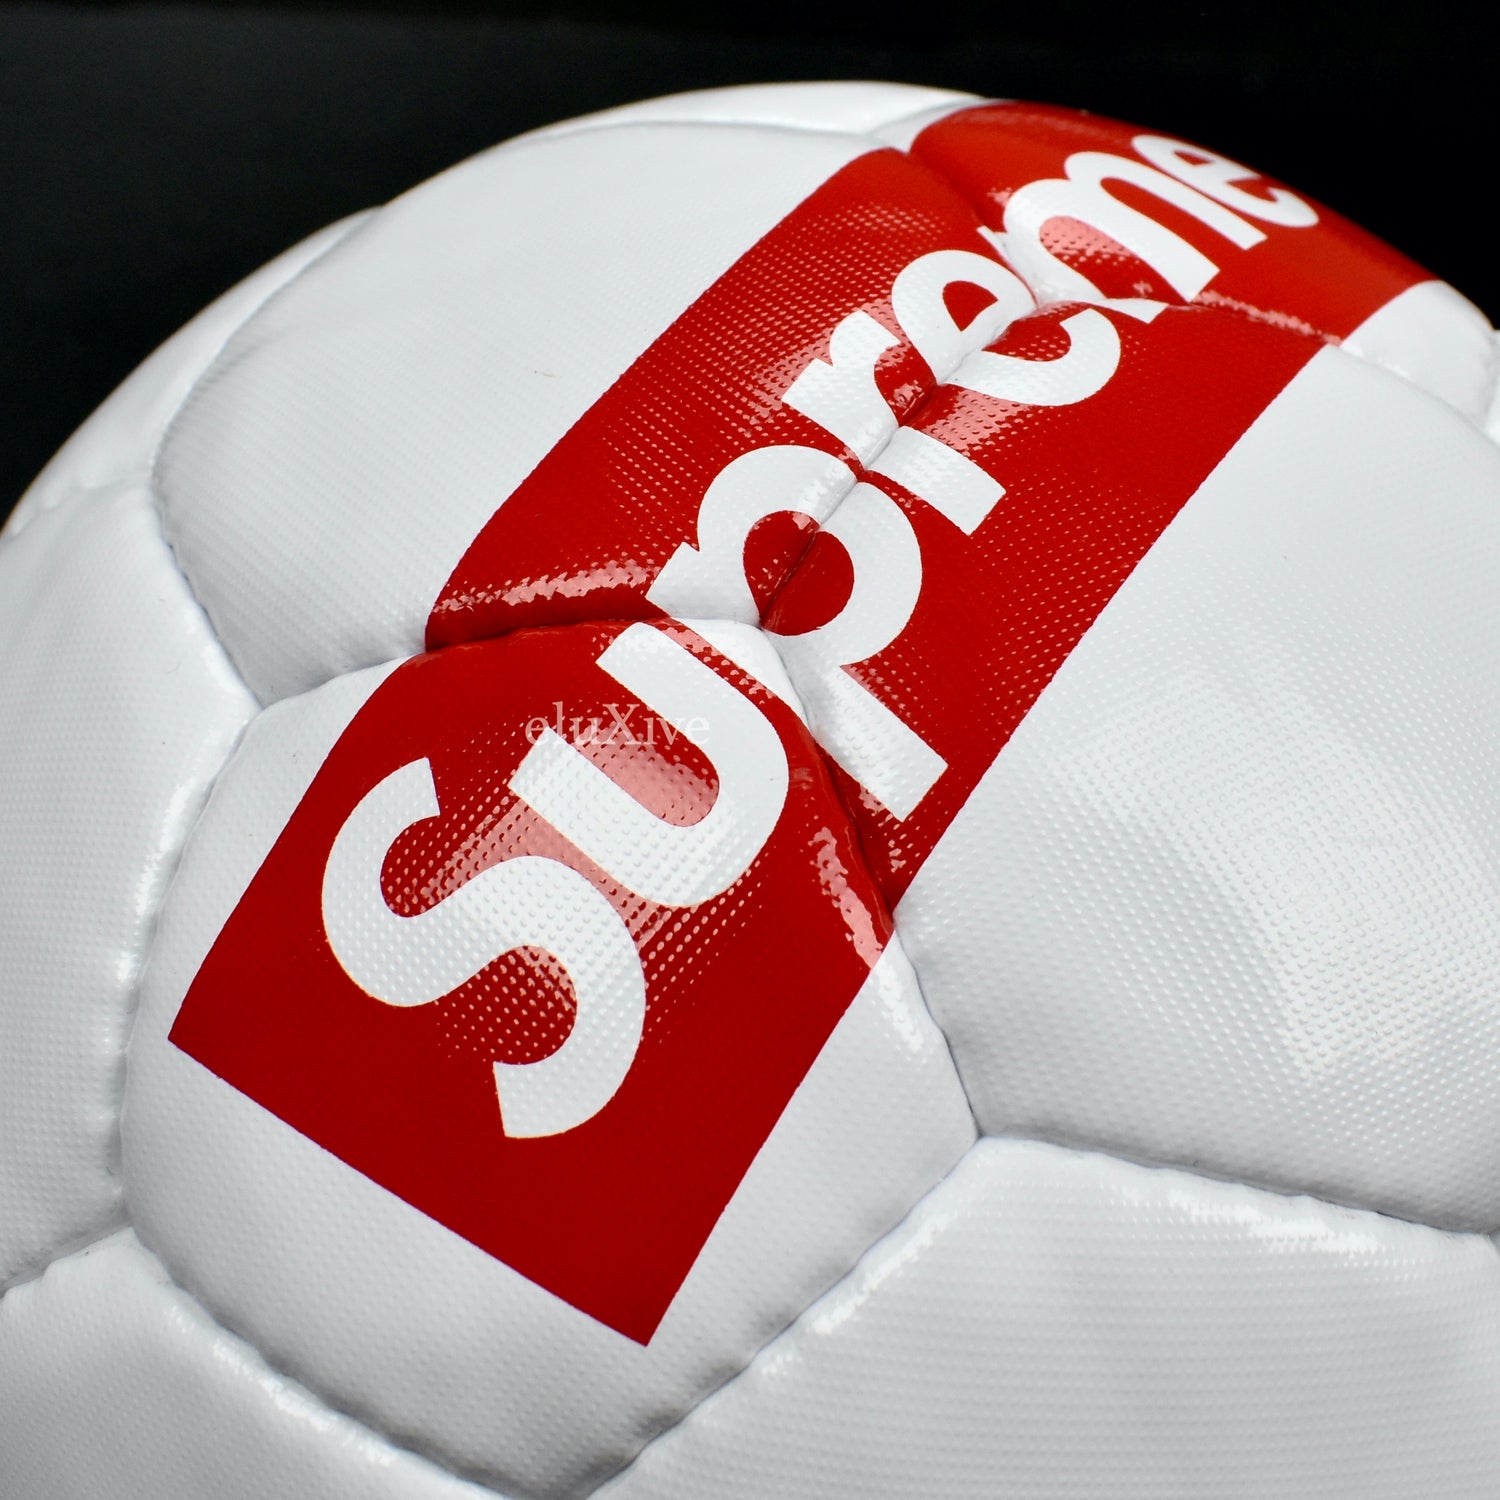 Supreme / Umbro Soccer Ball - mct.net.sa